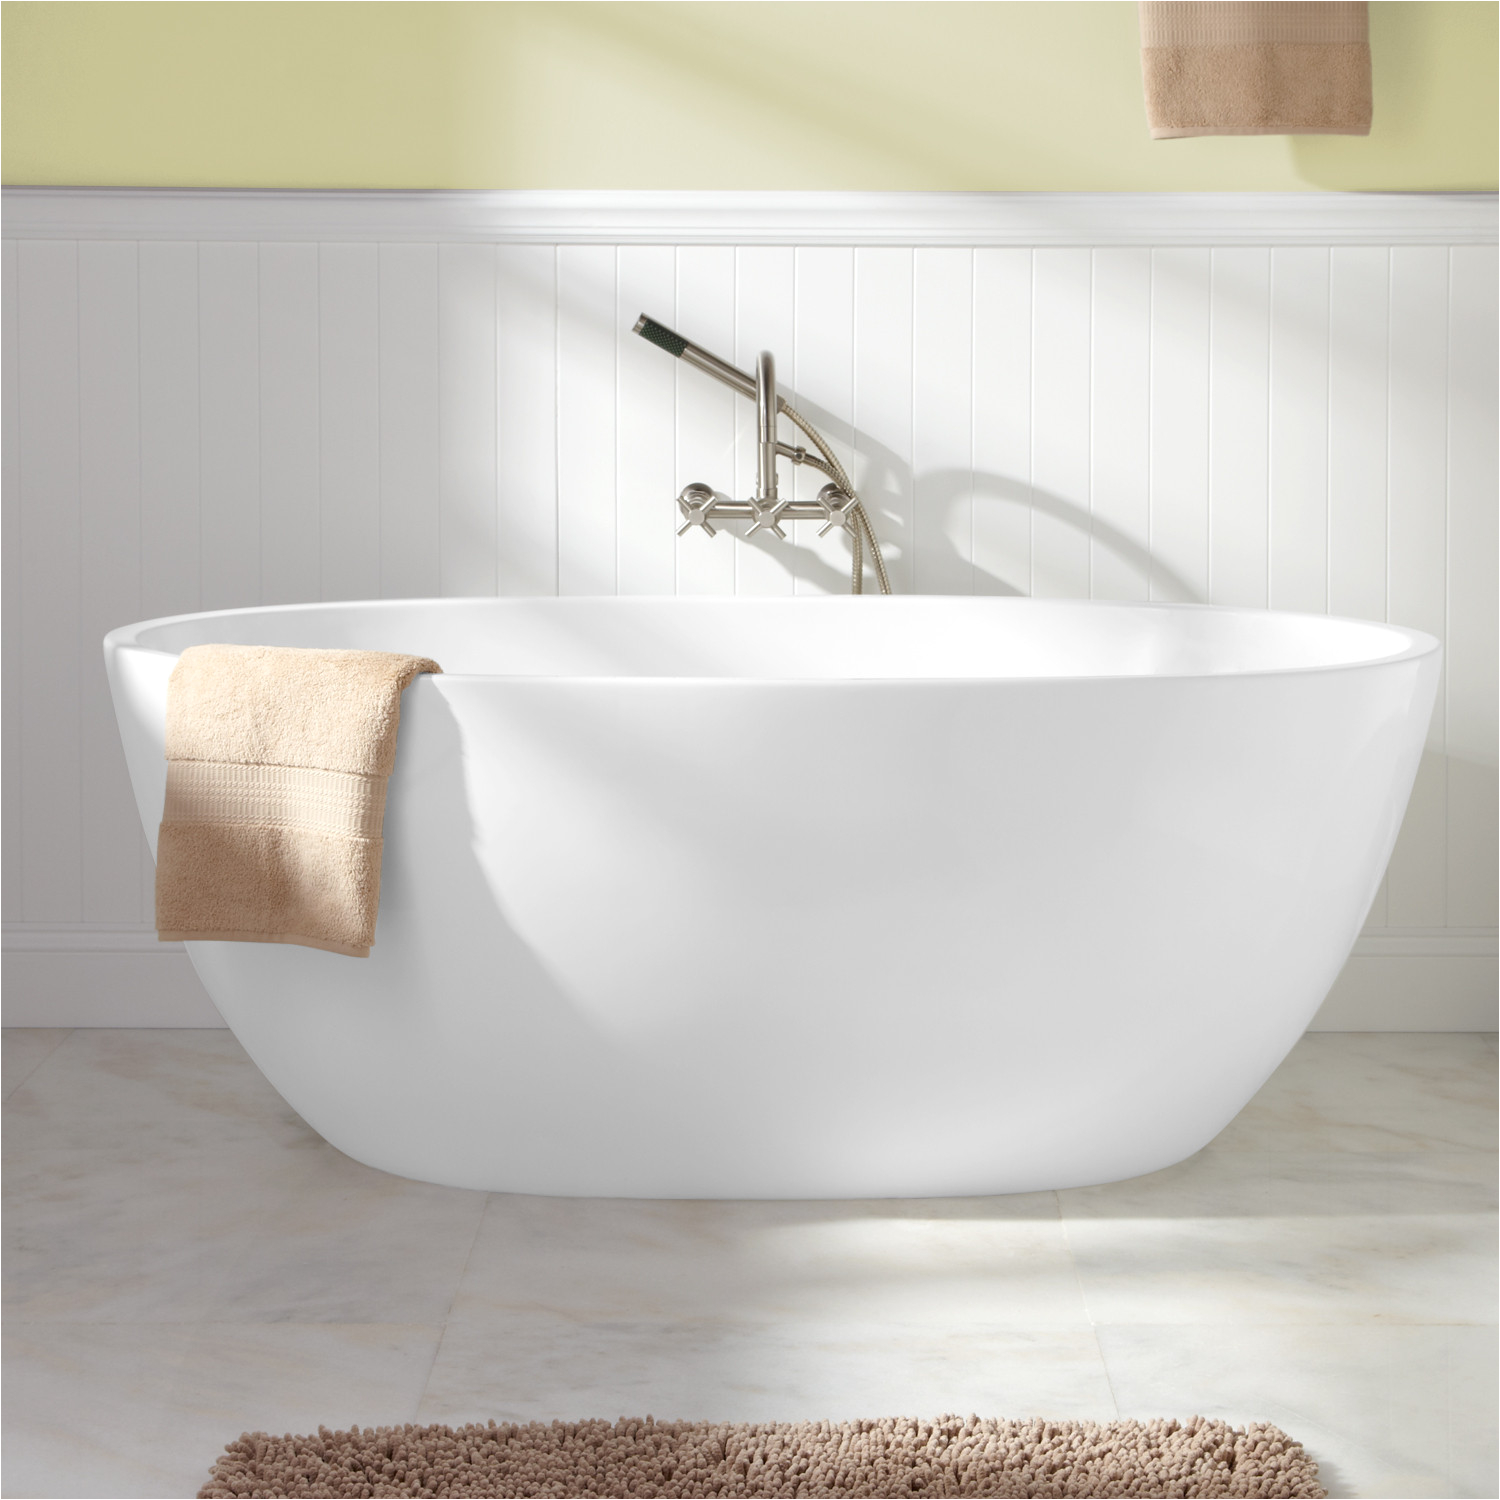 Is Acrylic Bathtubs 59" Keren Acrylic Freestanding Tub Acrylic Tubs